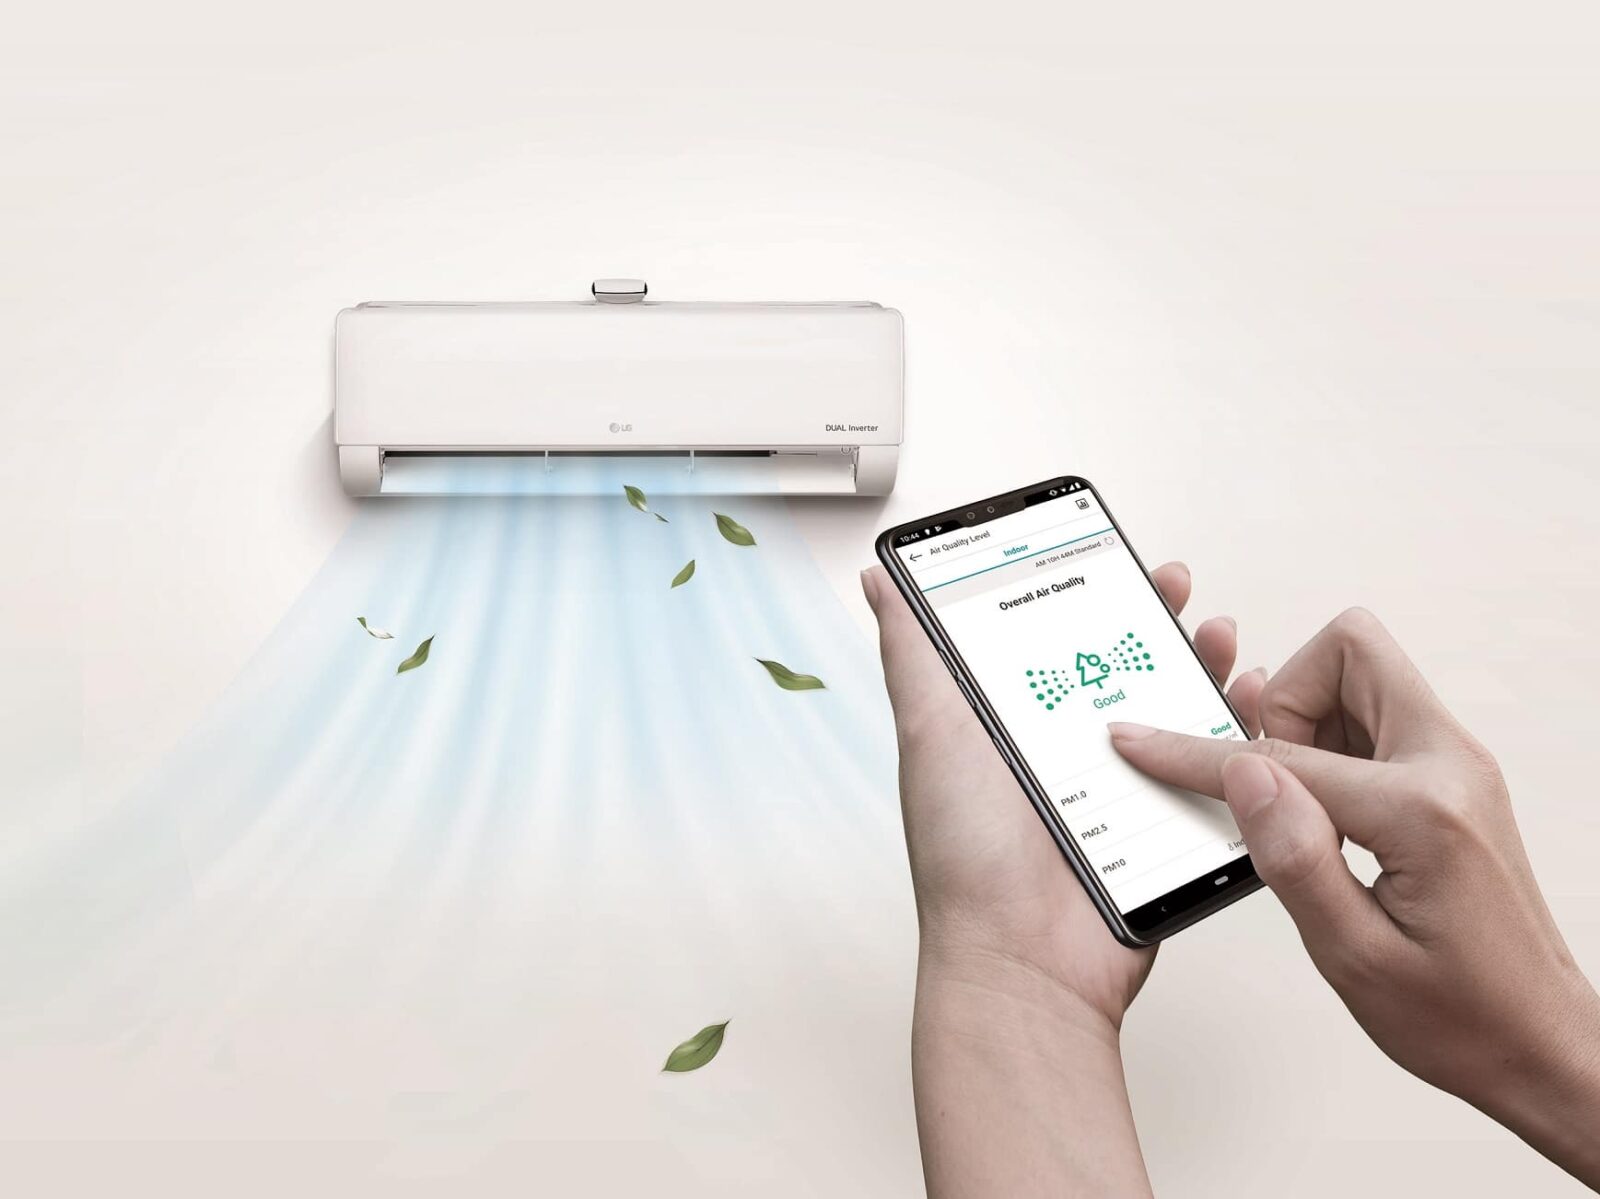 La nuova app LG ThinQ gestisce e monitora le soluzioni per riscaldamento LG thumbnail